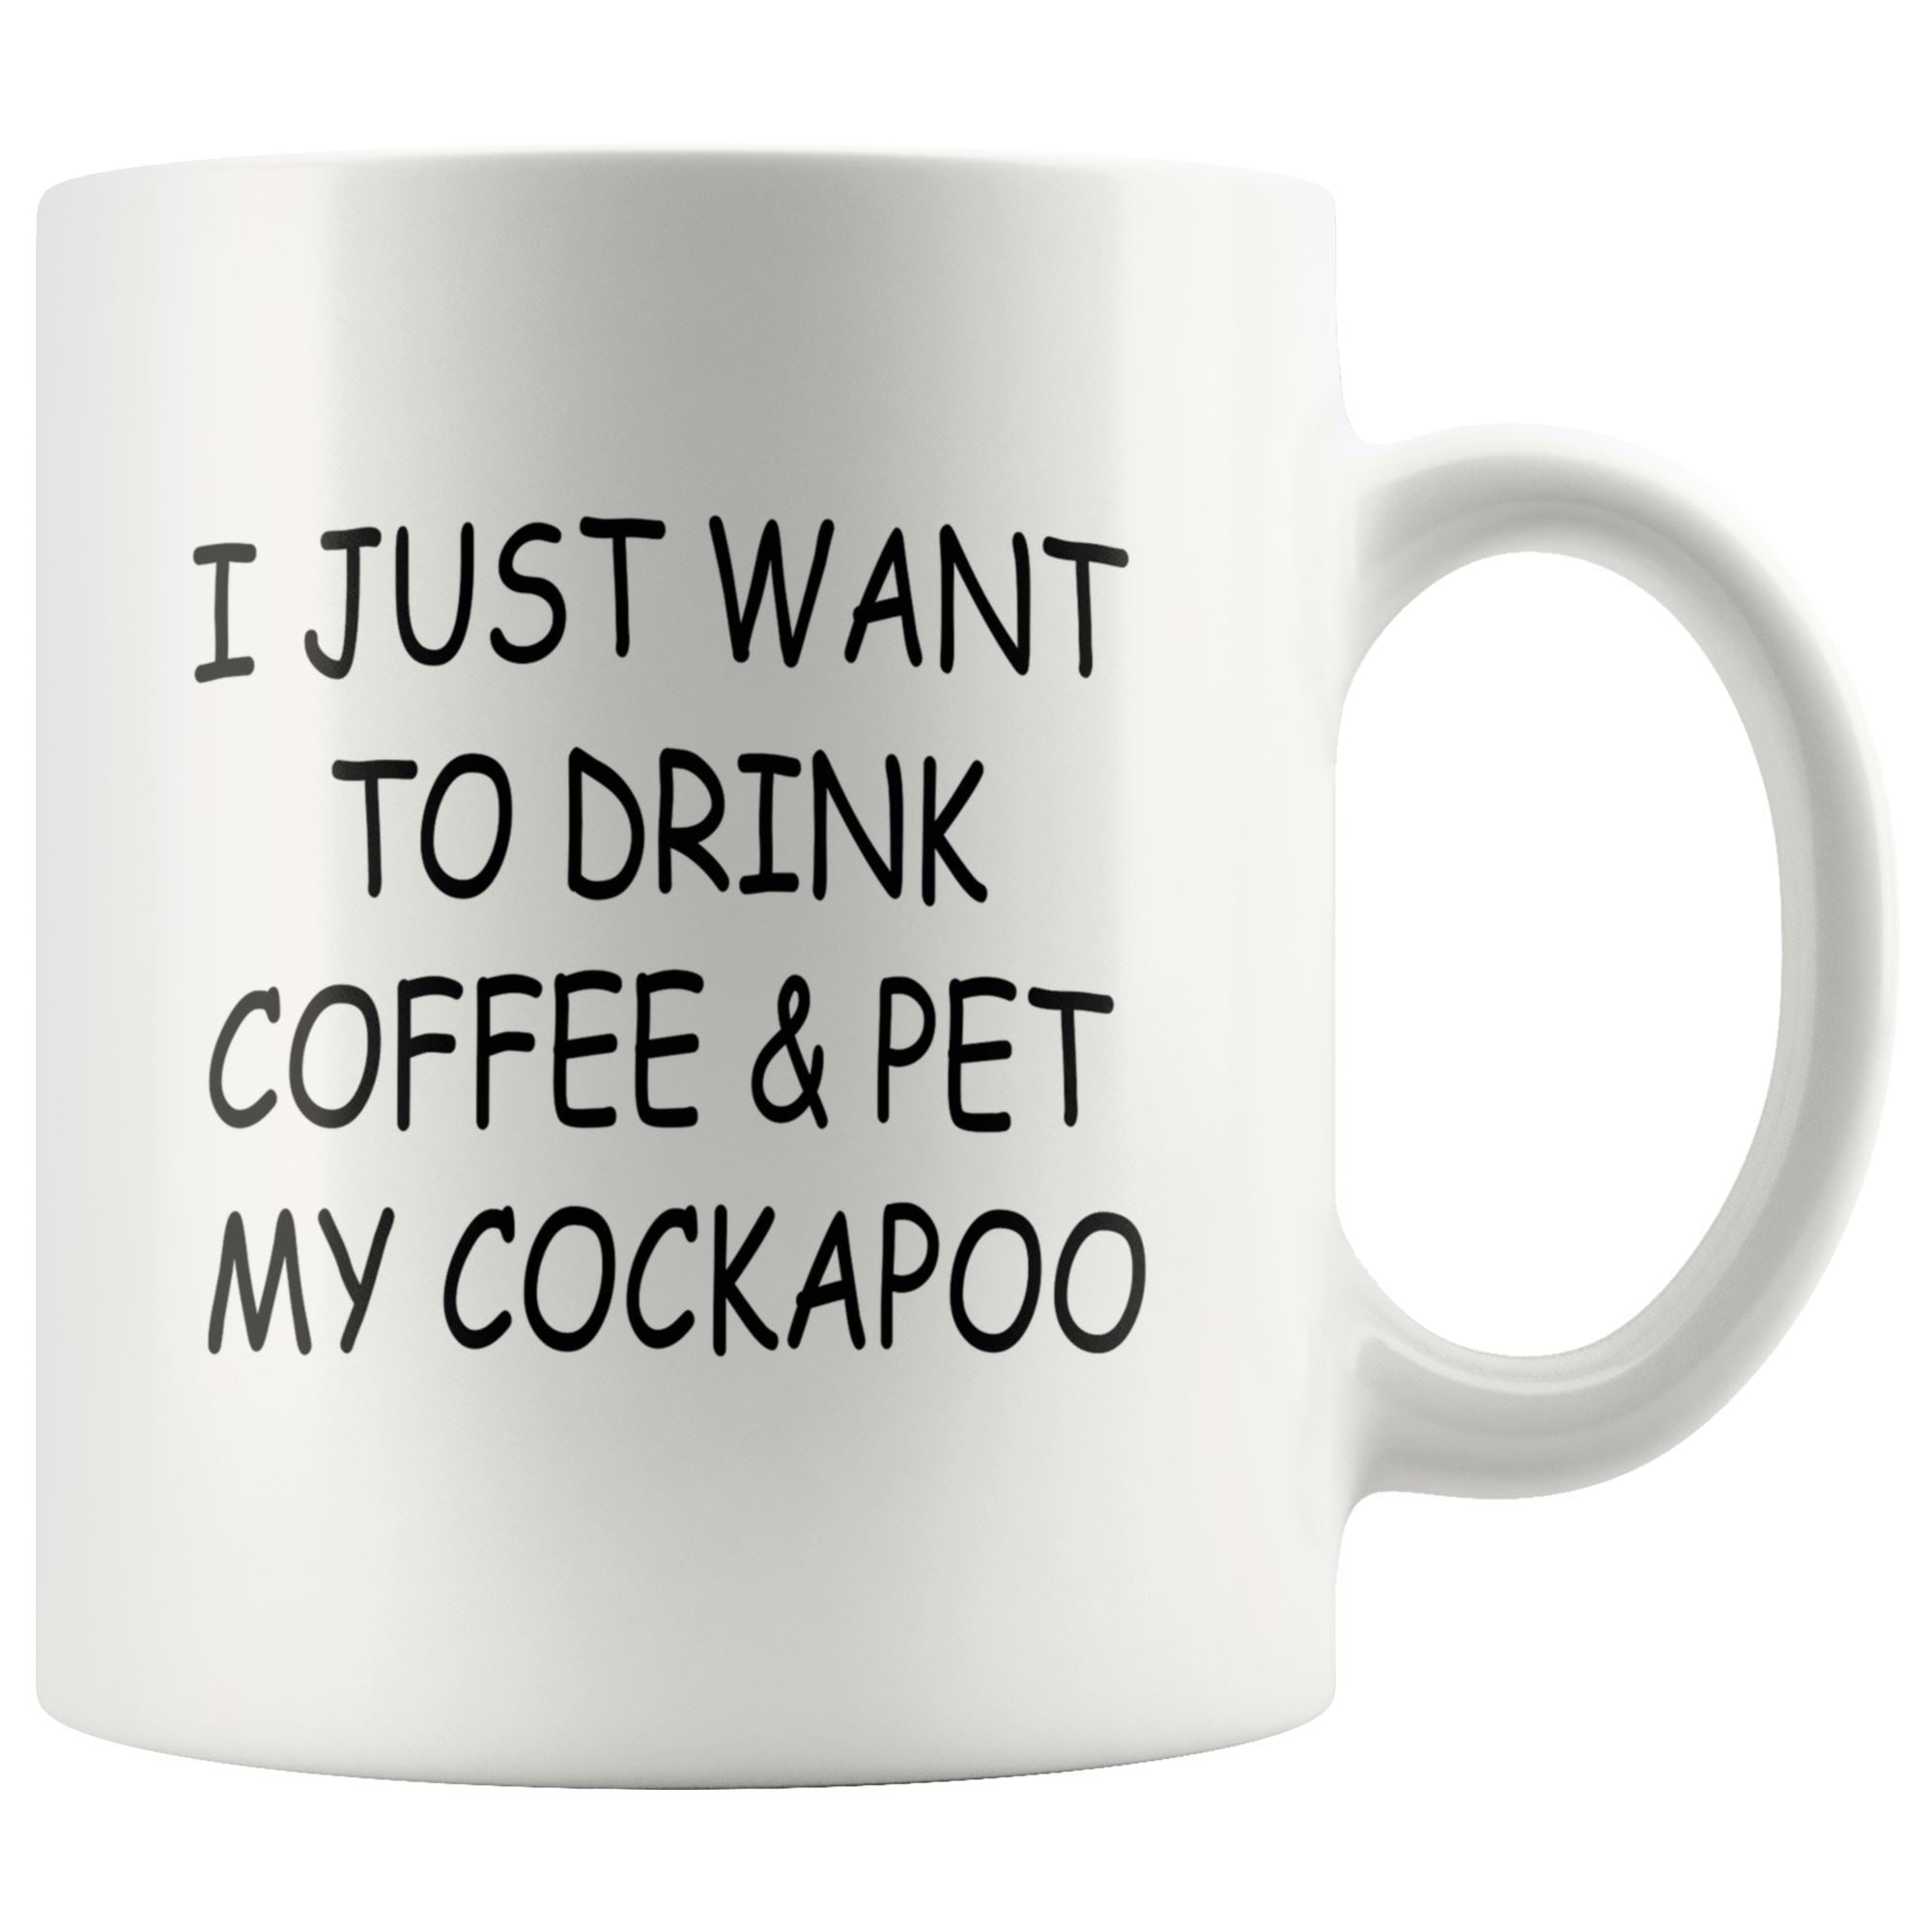 Cockapoo Mug Drinkware teelaunch 11oz Mug 